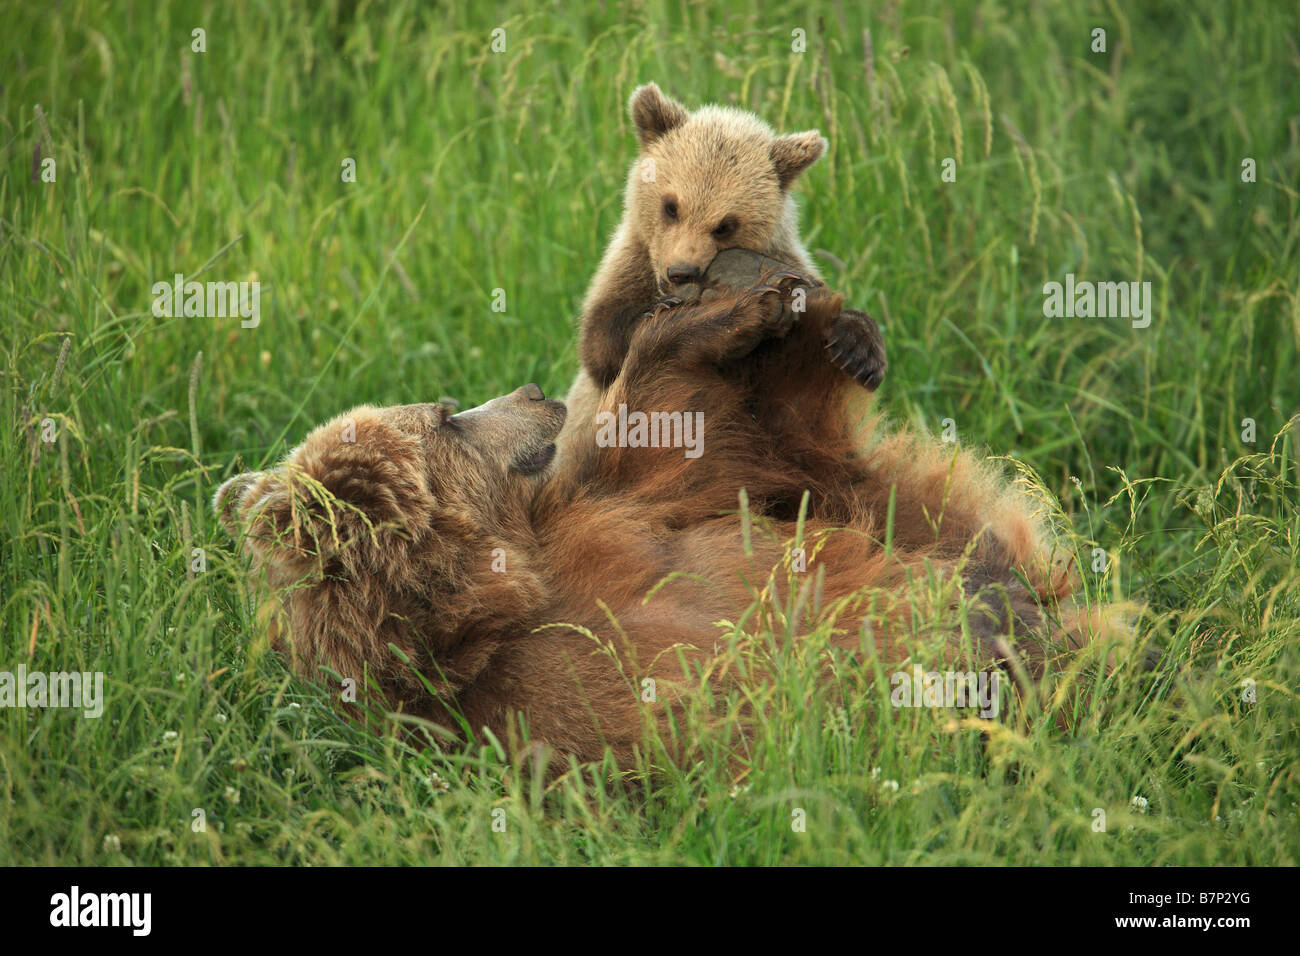 Europäische Bär (Ursus Arctos). Mutter im Grass liegen während des Spielens mit cub Stockfoto